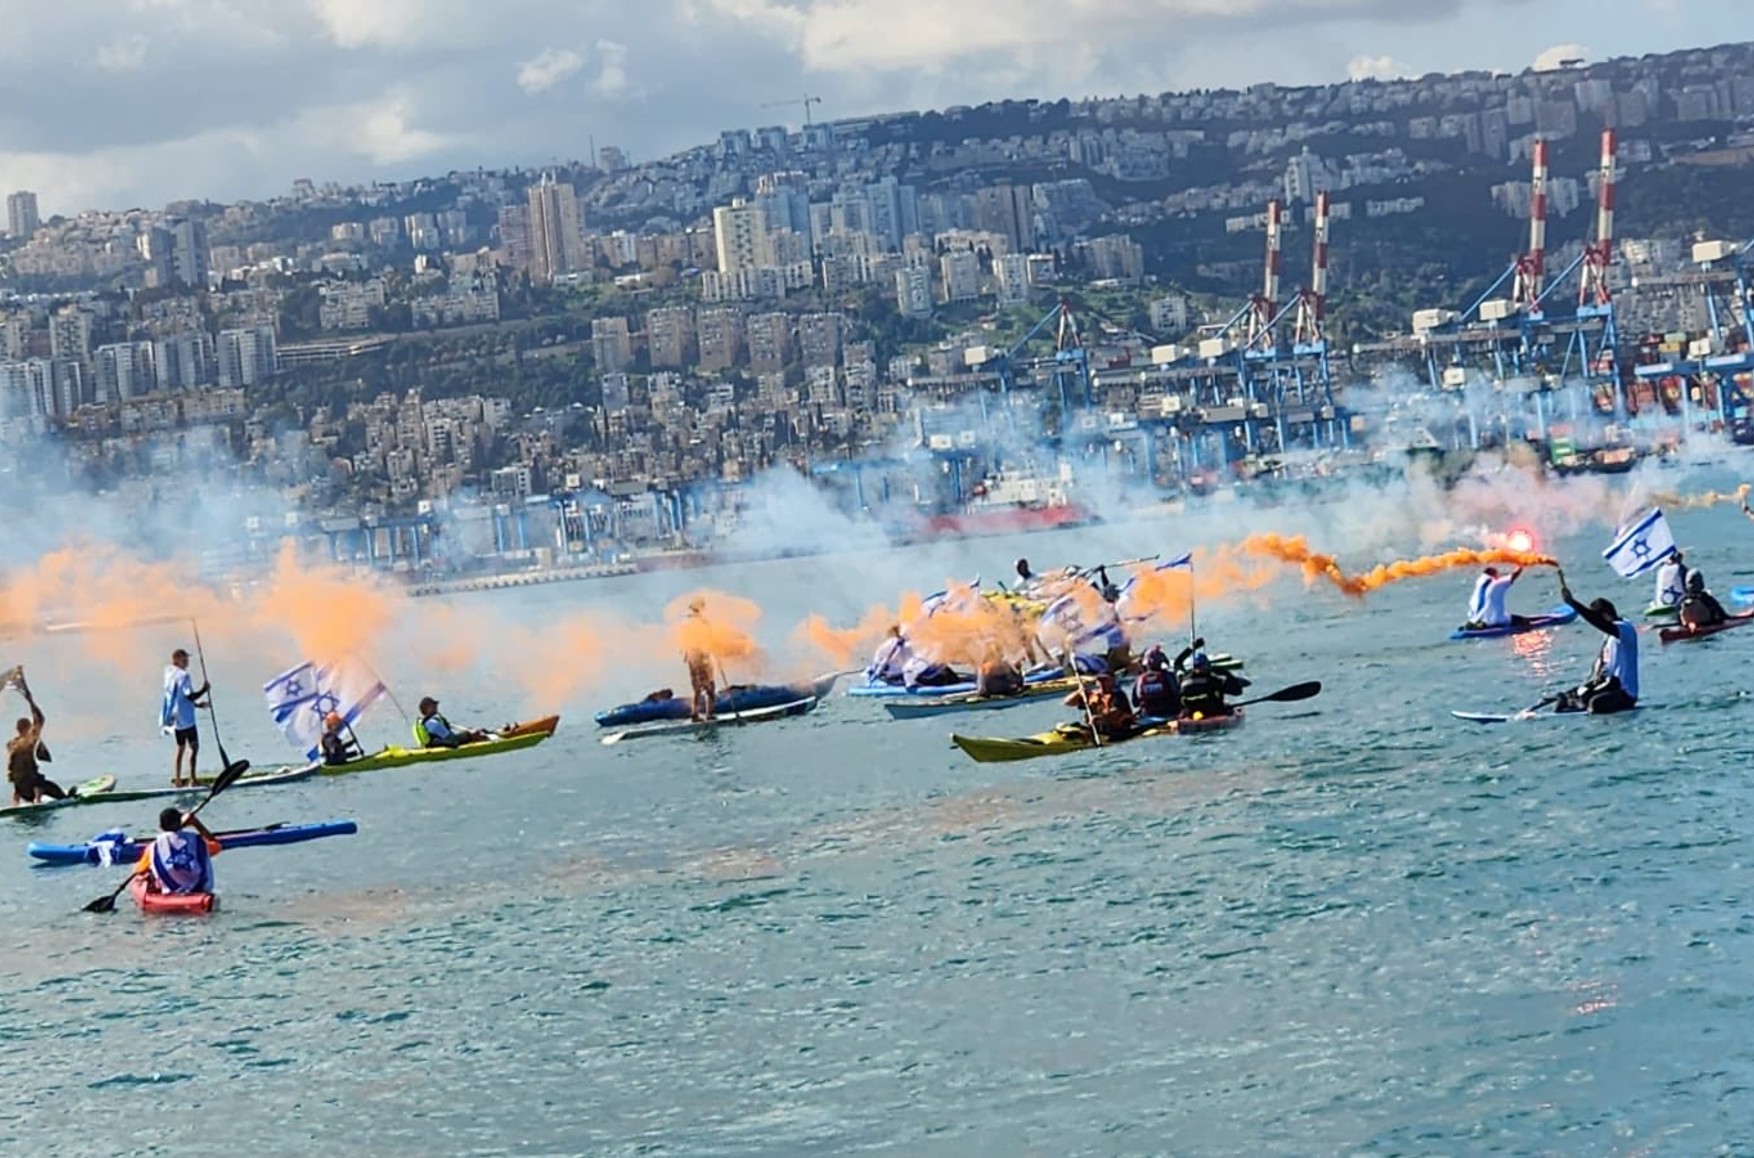 Резервисты ВМС Израиля заблокировали порт Хайфы, протестуя против судебной реформы